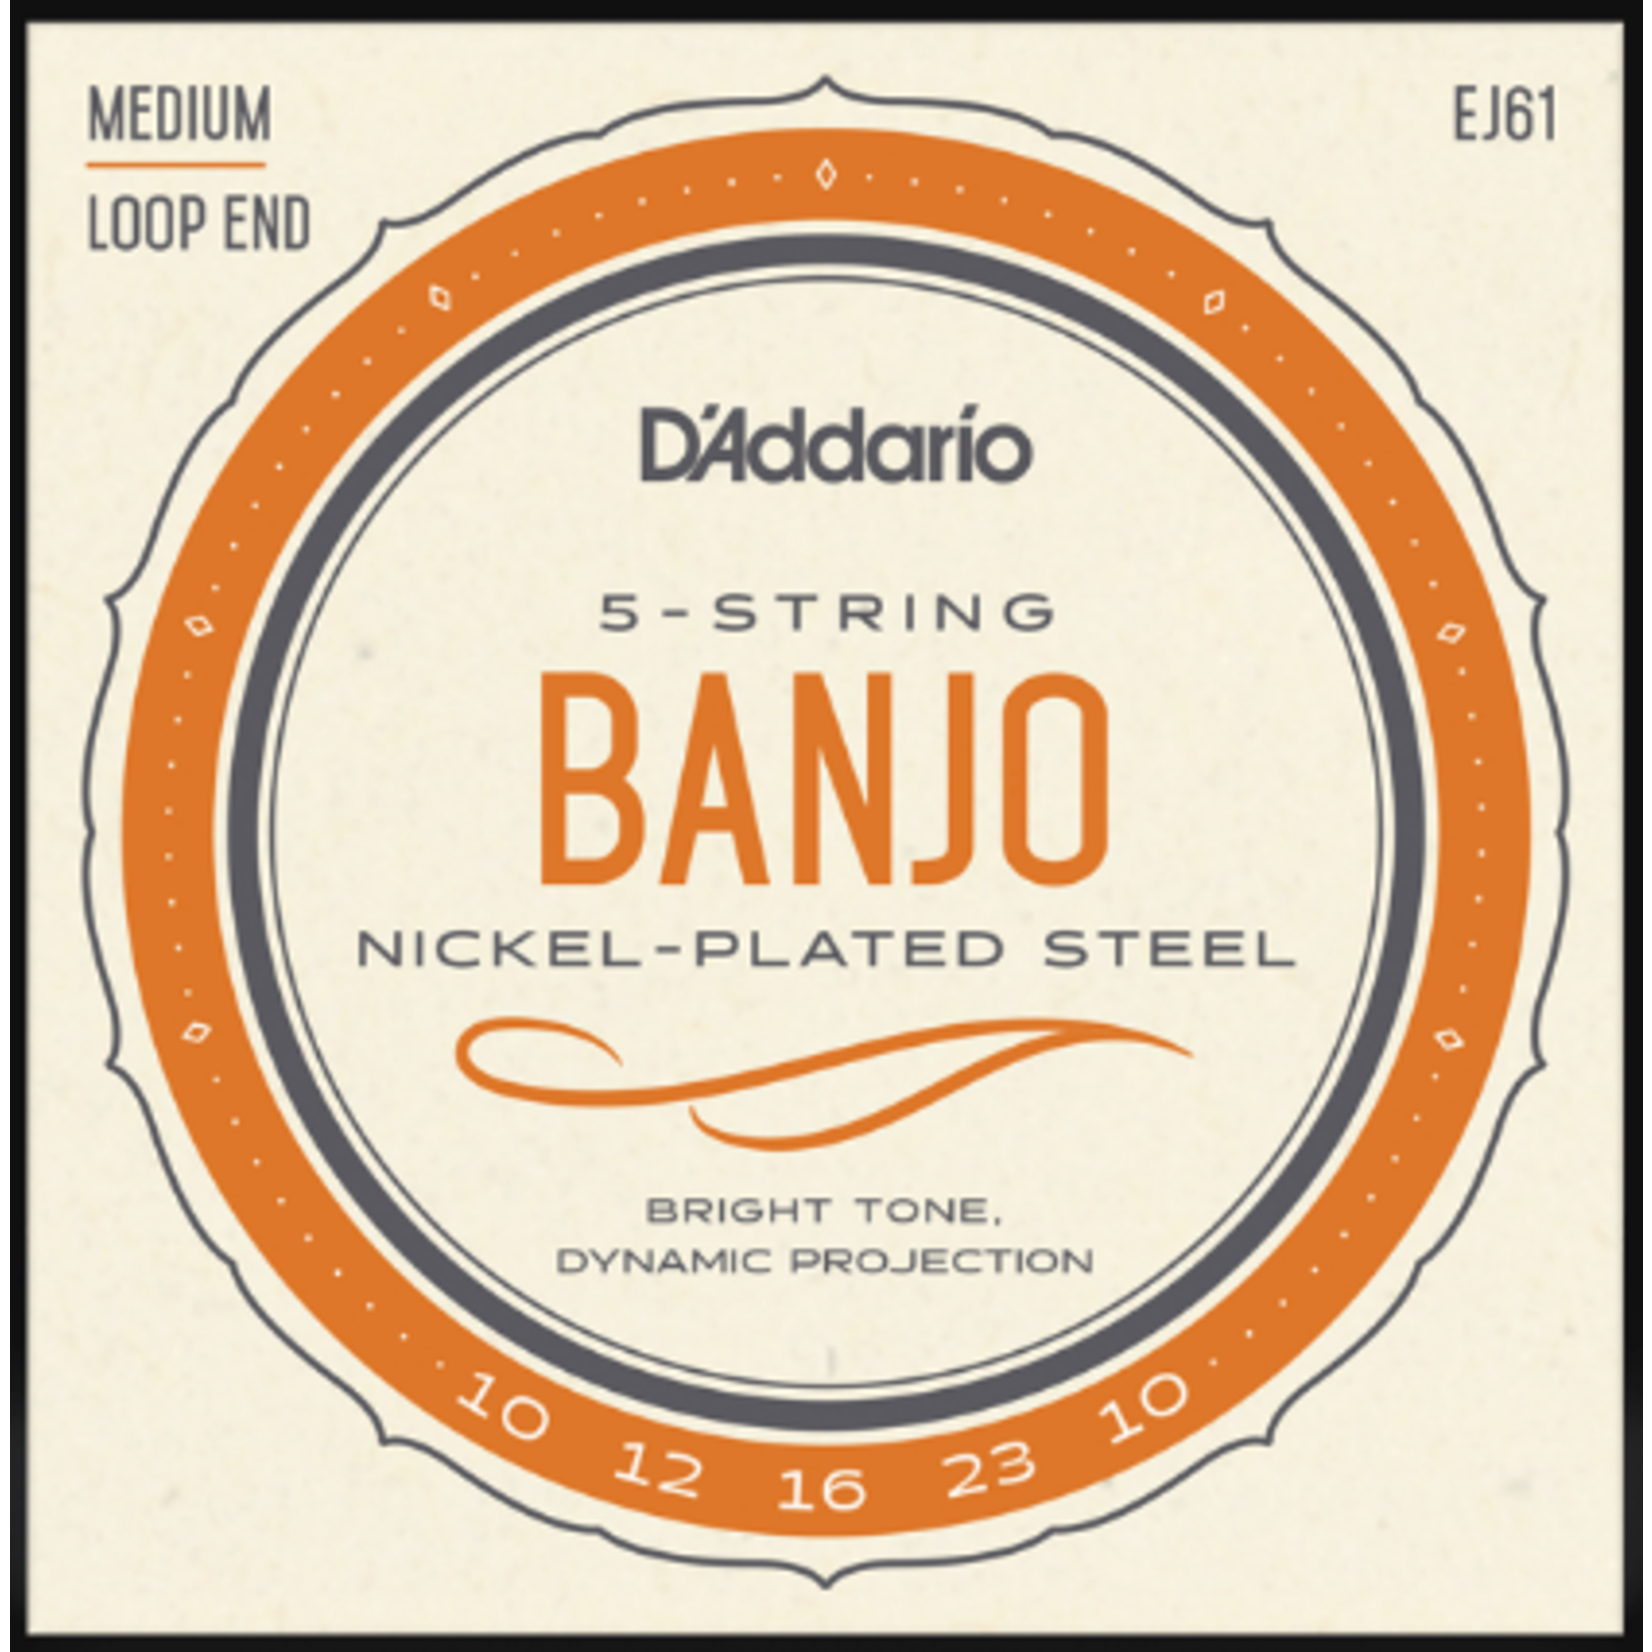 D'Addario Medium Loop End Banjo 5-String Banjo Strings